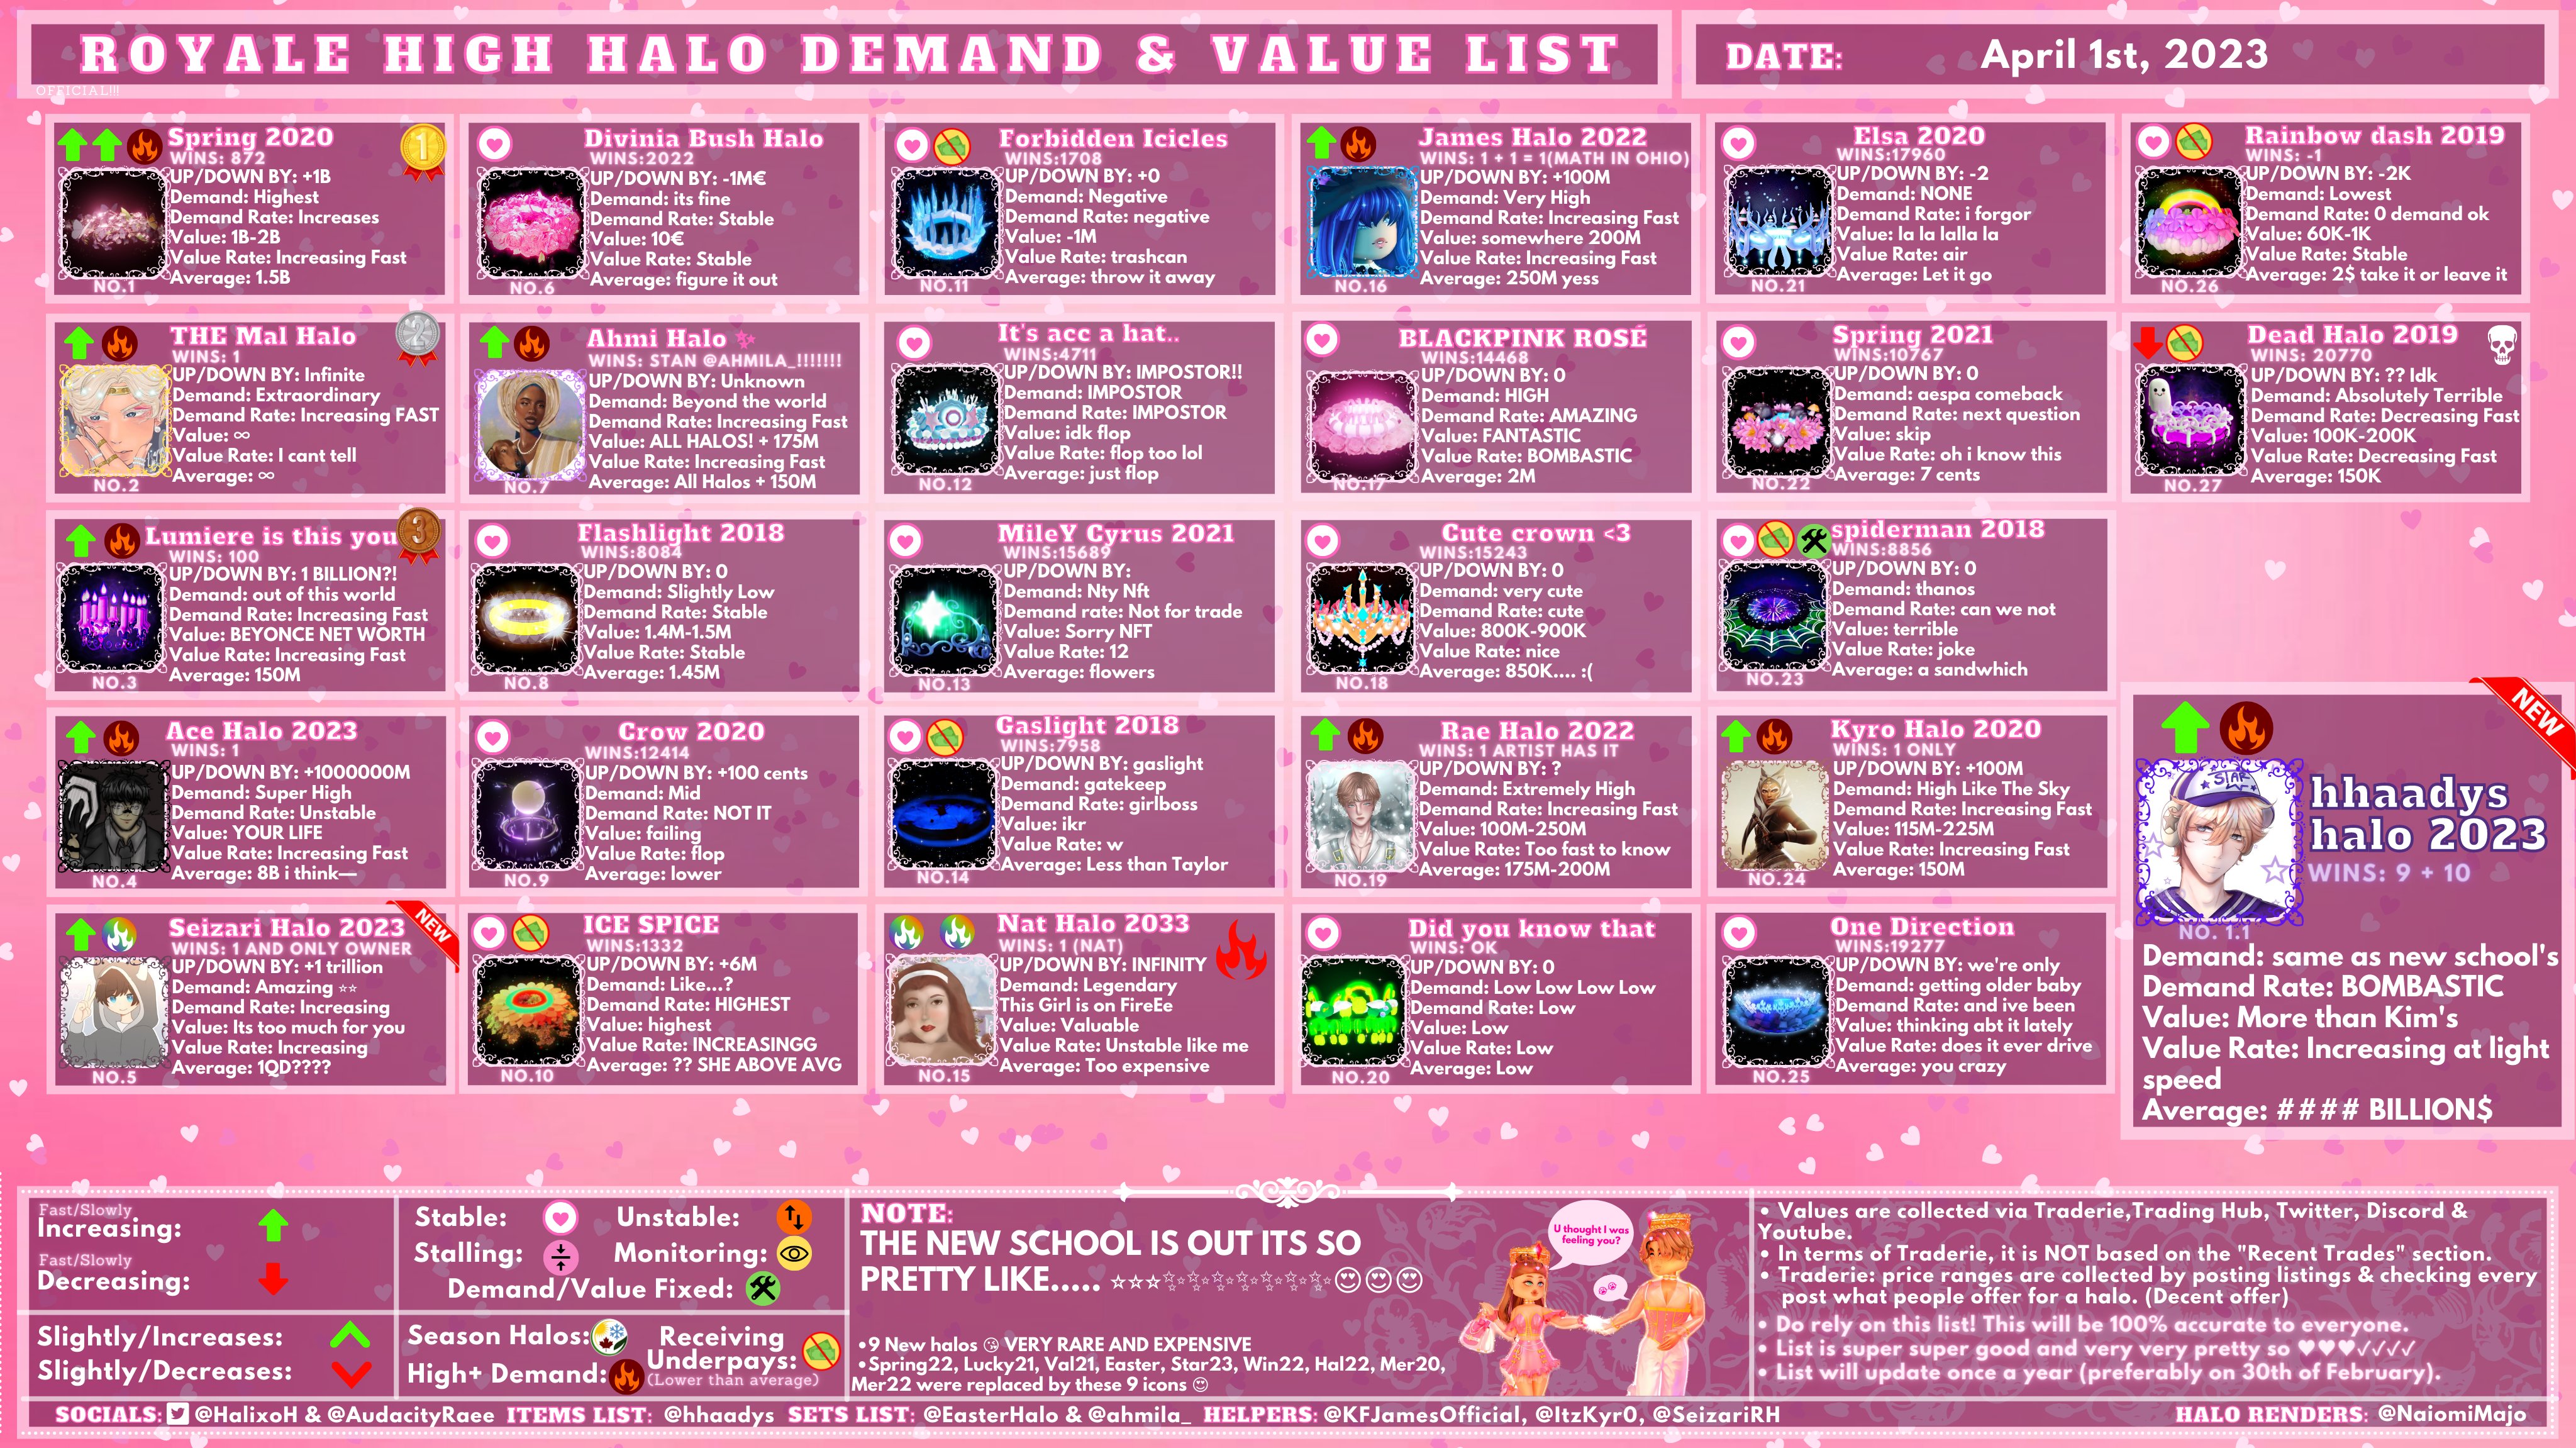 updated rh high tier halo value list! #rh #royalehigh #valhalo #valhal